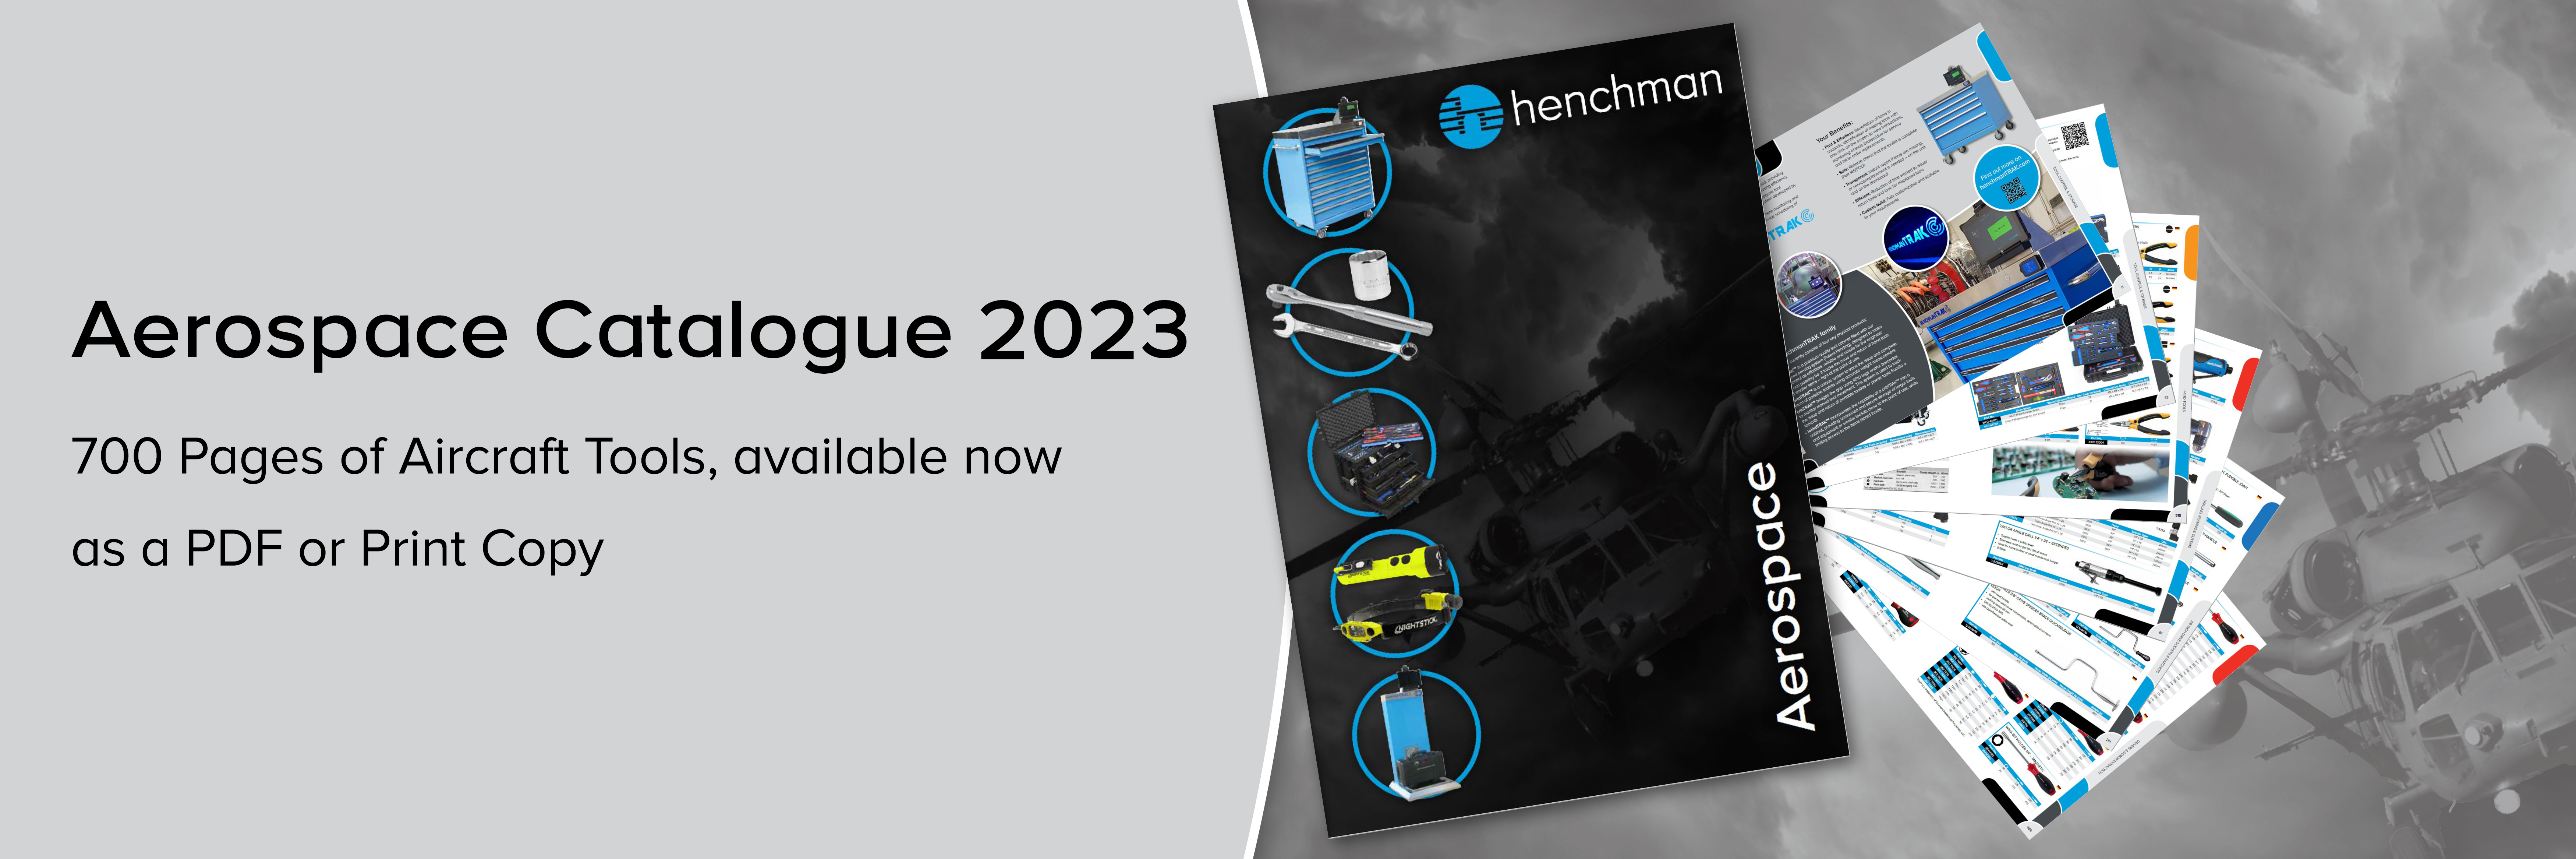 Henchman Aerospace Print Catalogue 2023